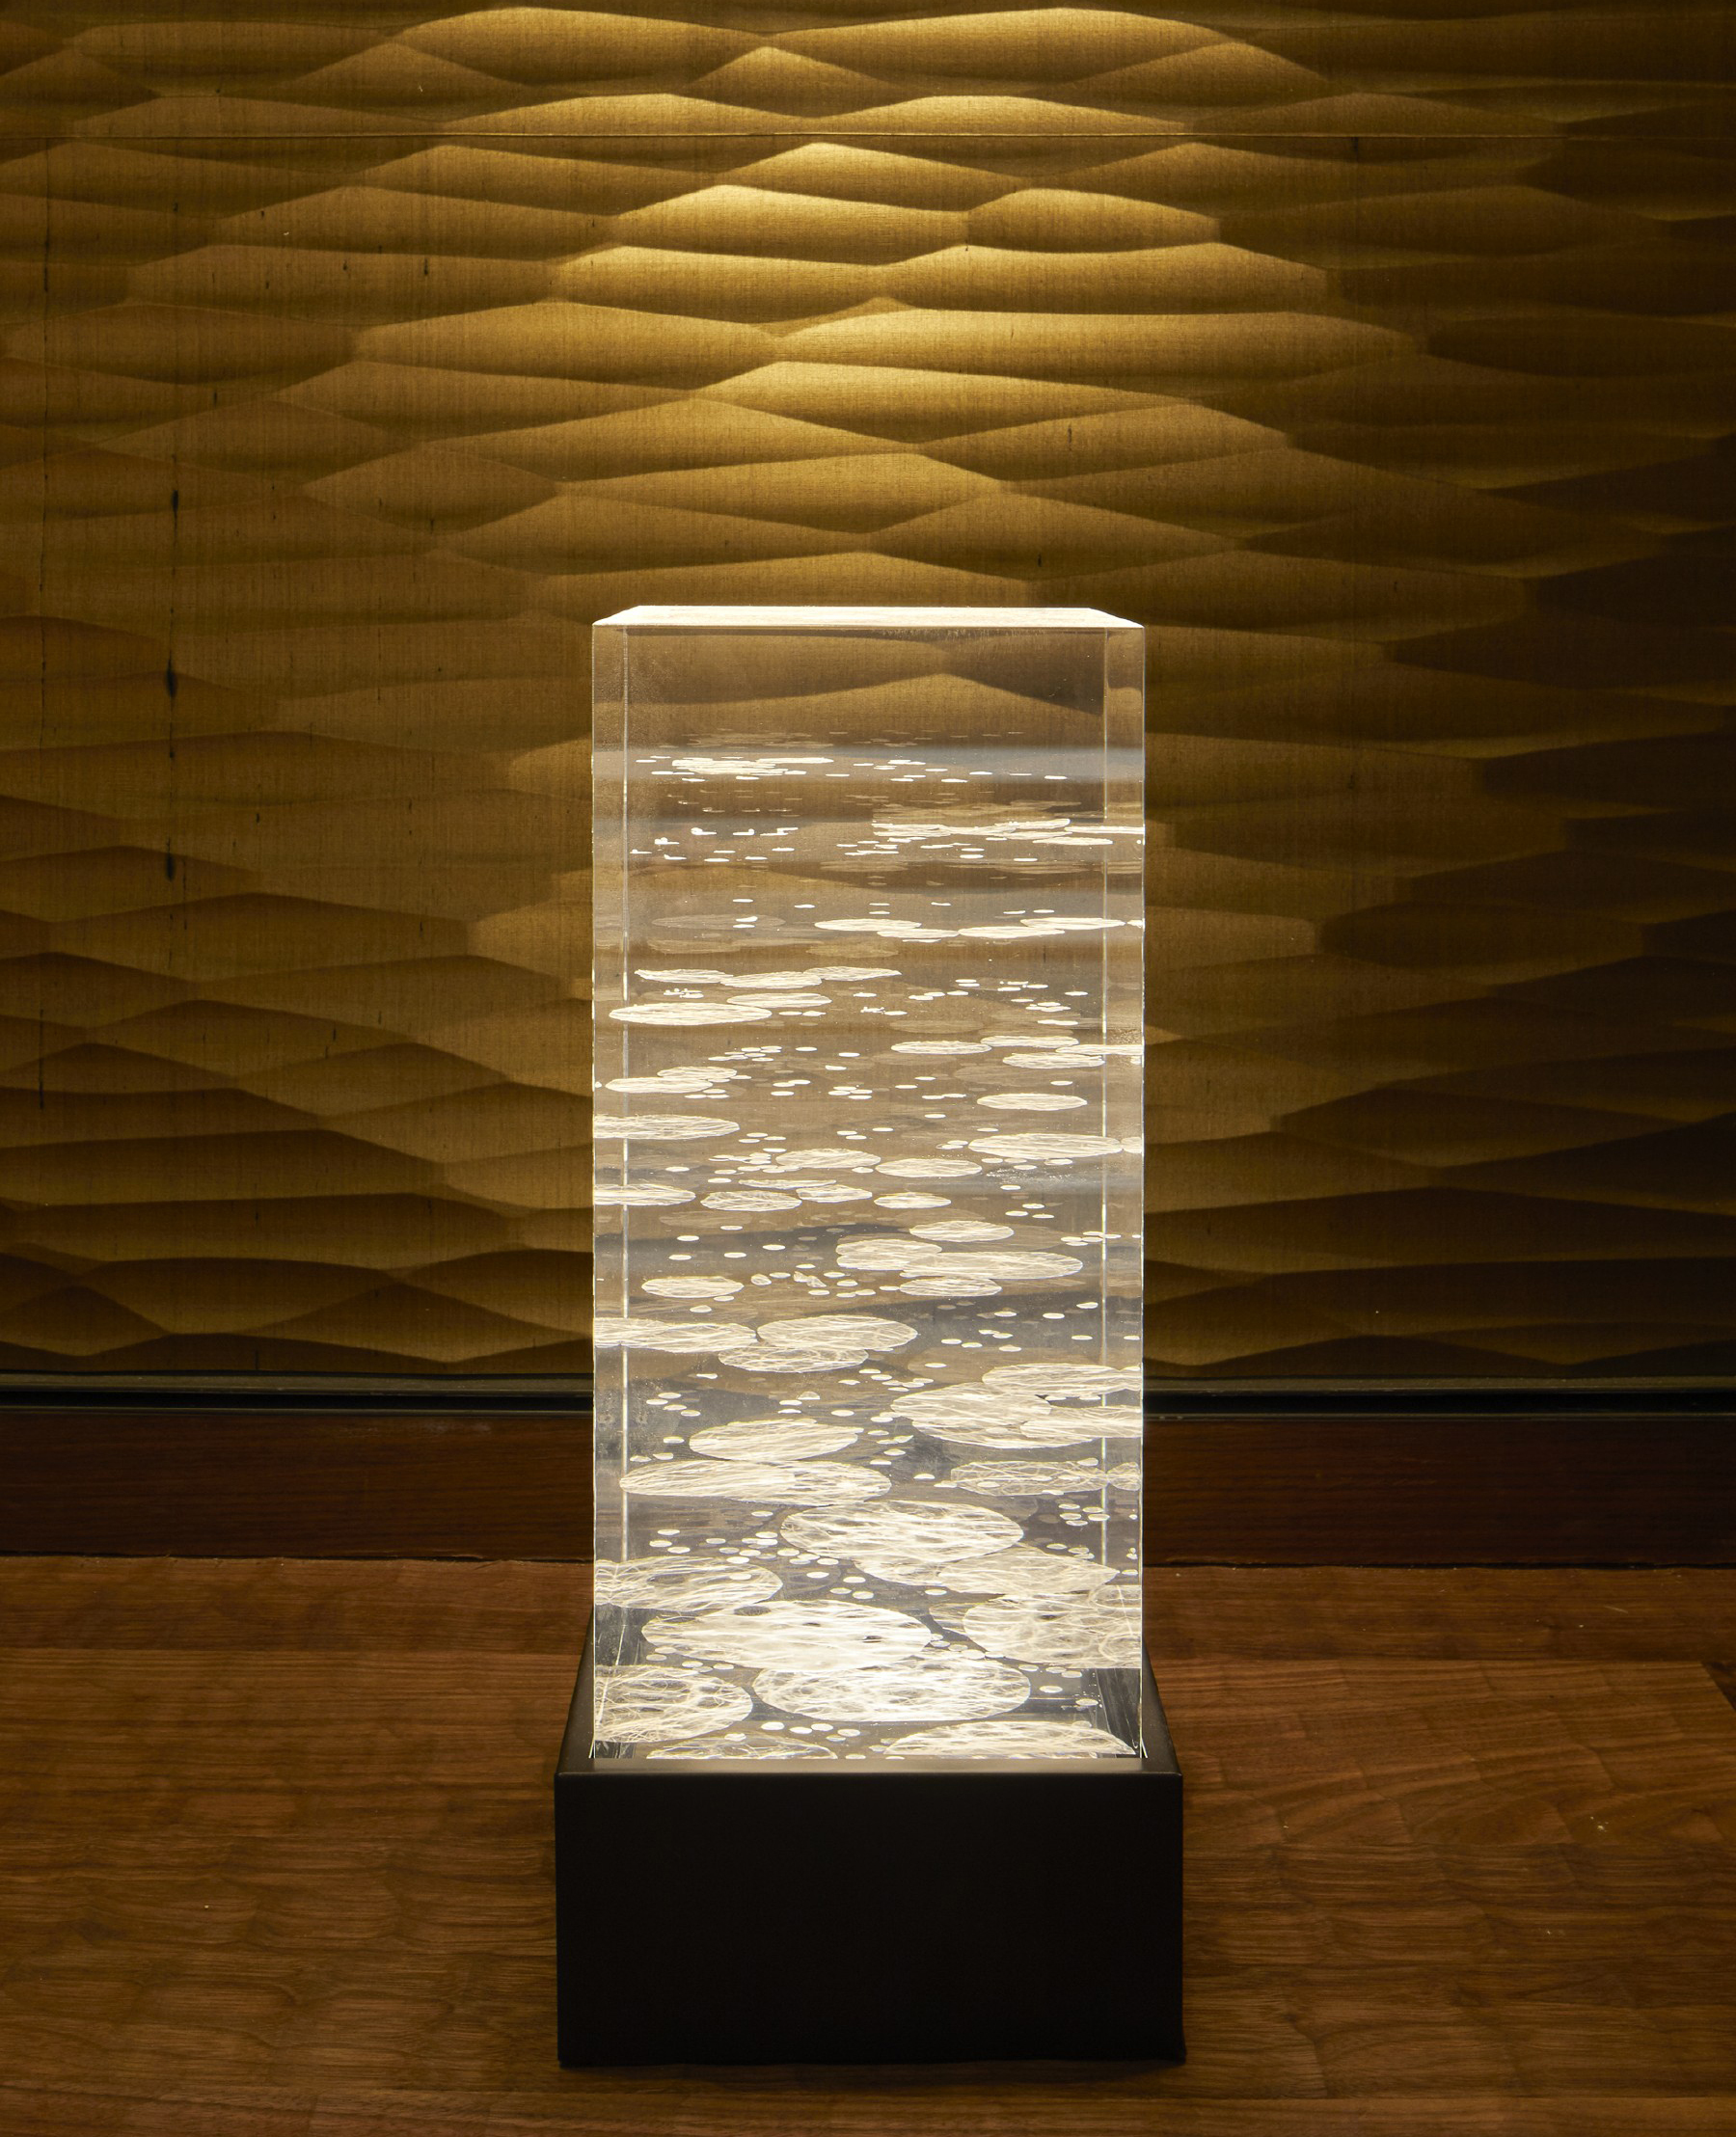 小泉照明憑藉 京都神樂岡蓮月莊 專案榮獲照明工程學會傑出獎 Business Wire